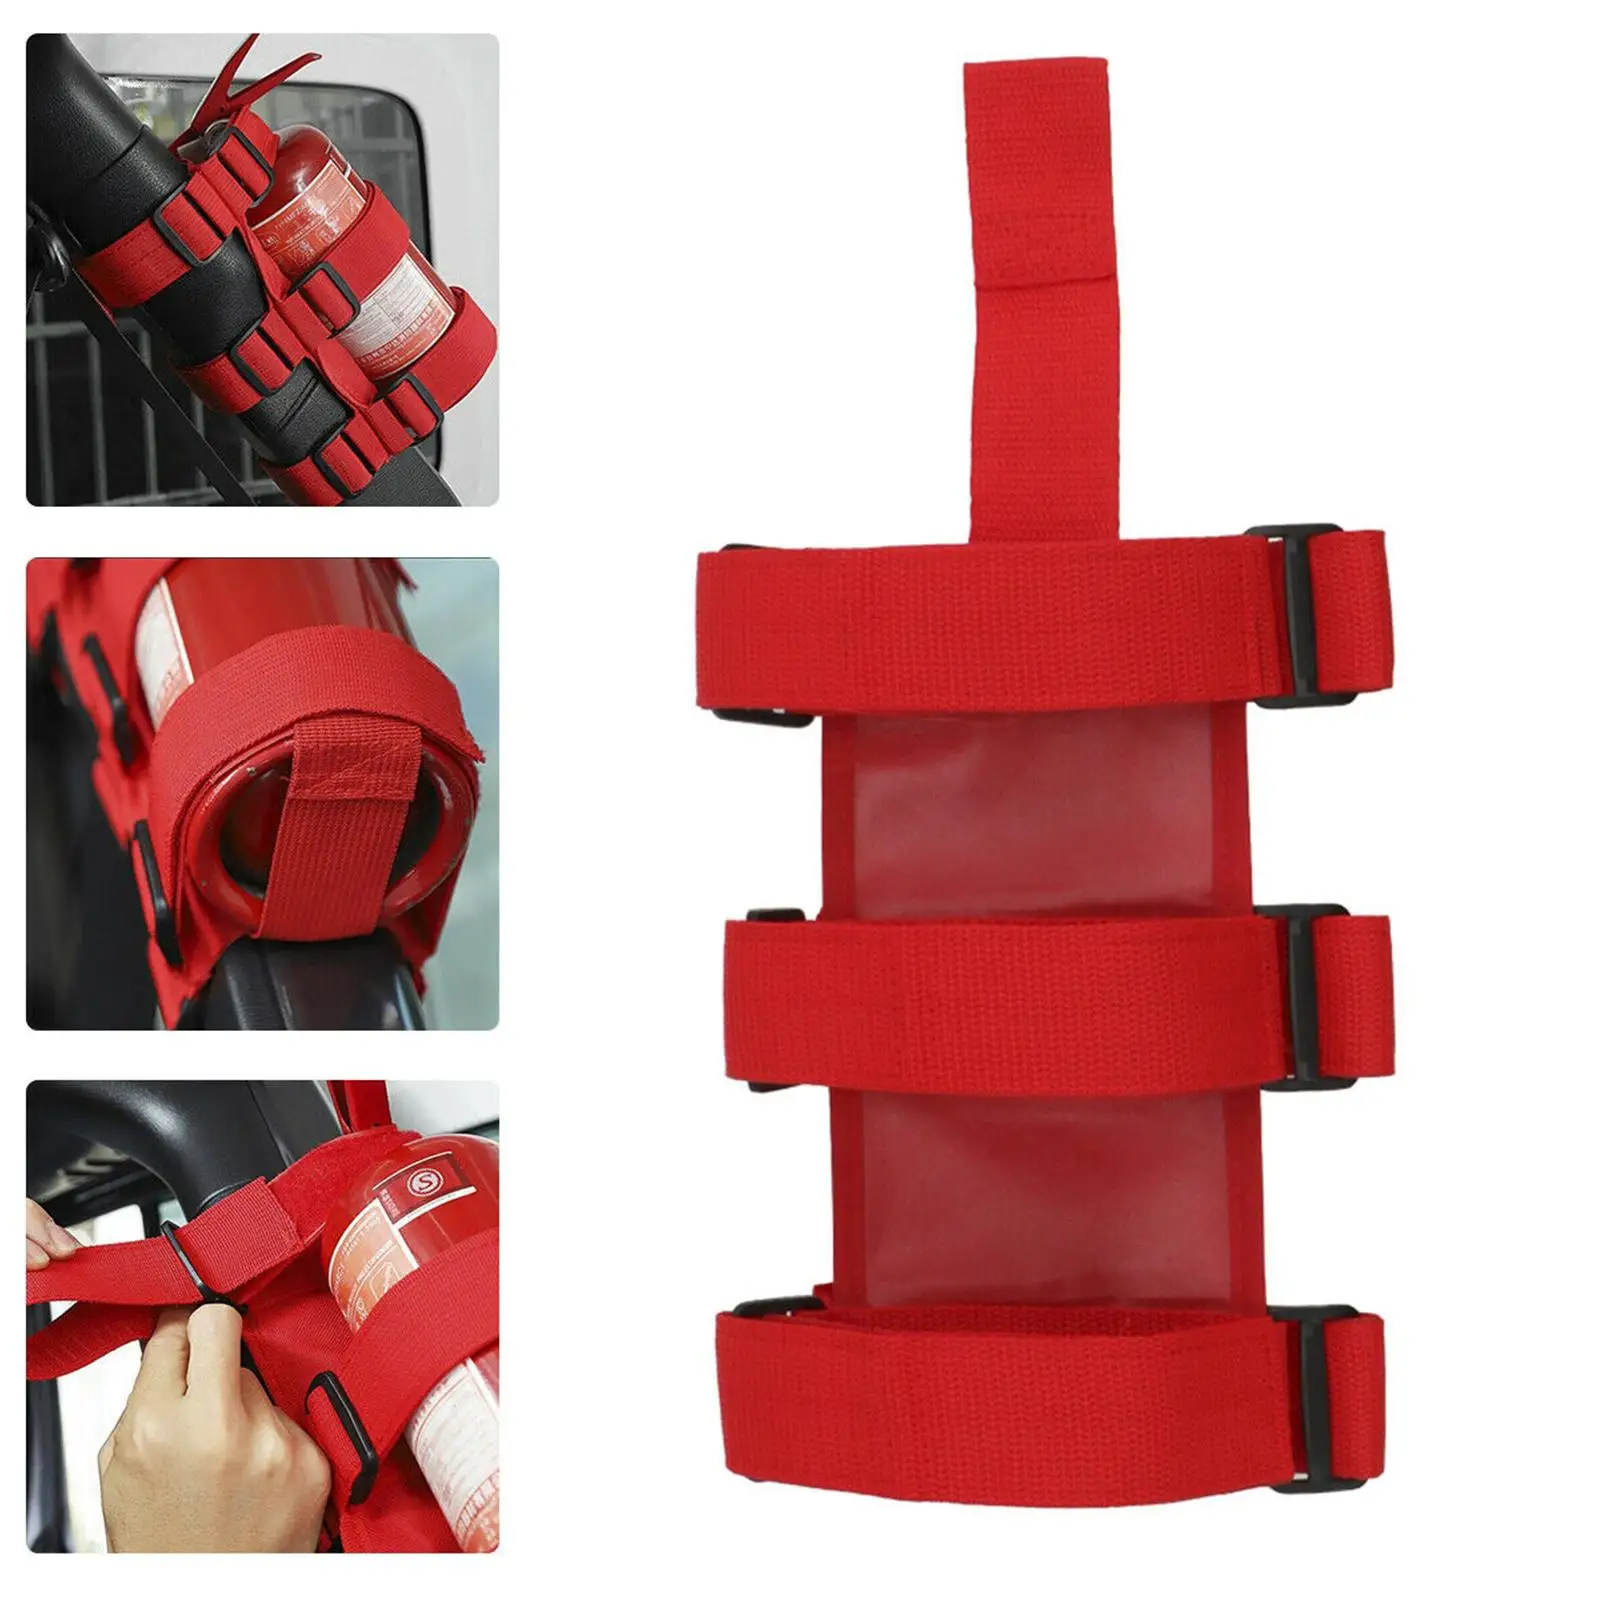 Universal Adjustable Fire Extinguisher Holder Bracket Fit for